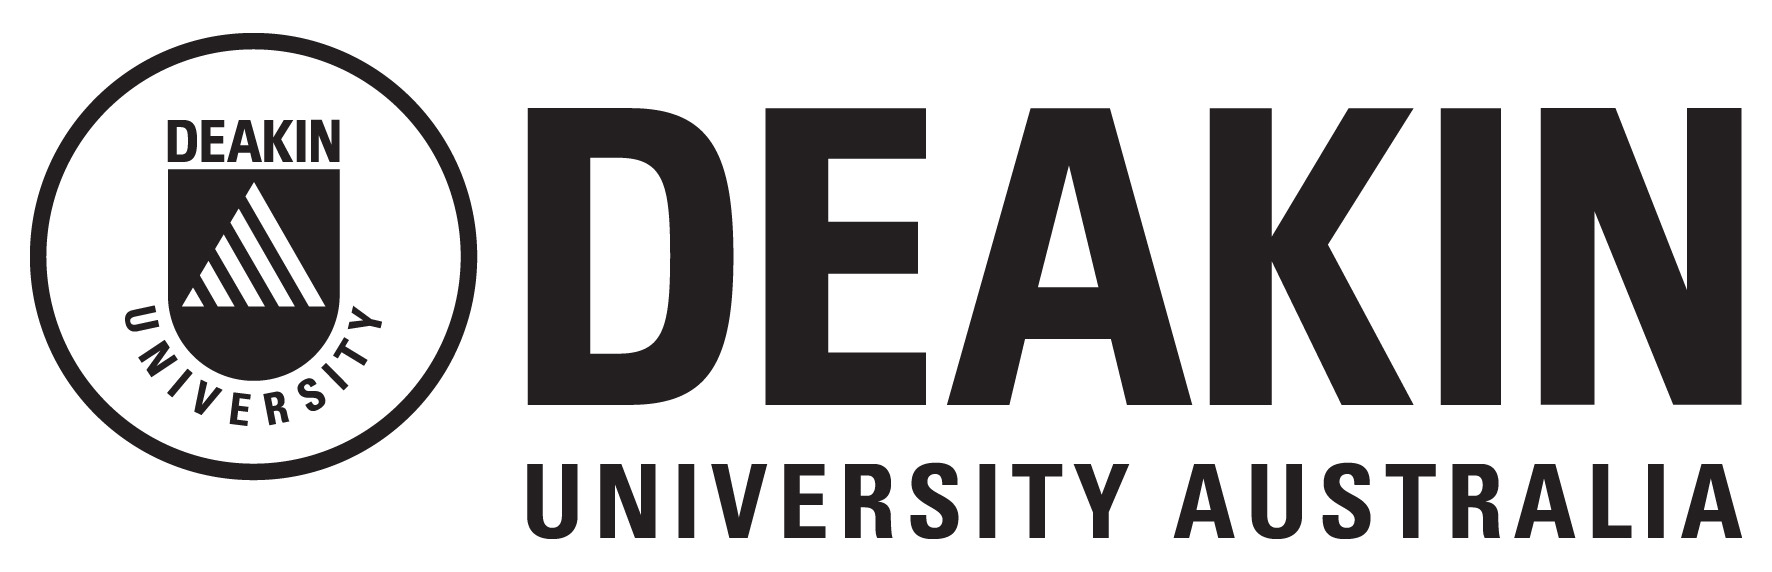 Deakin University Logo photo - 1